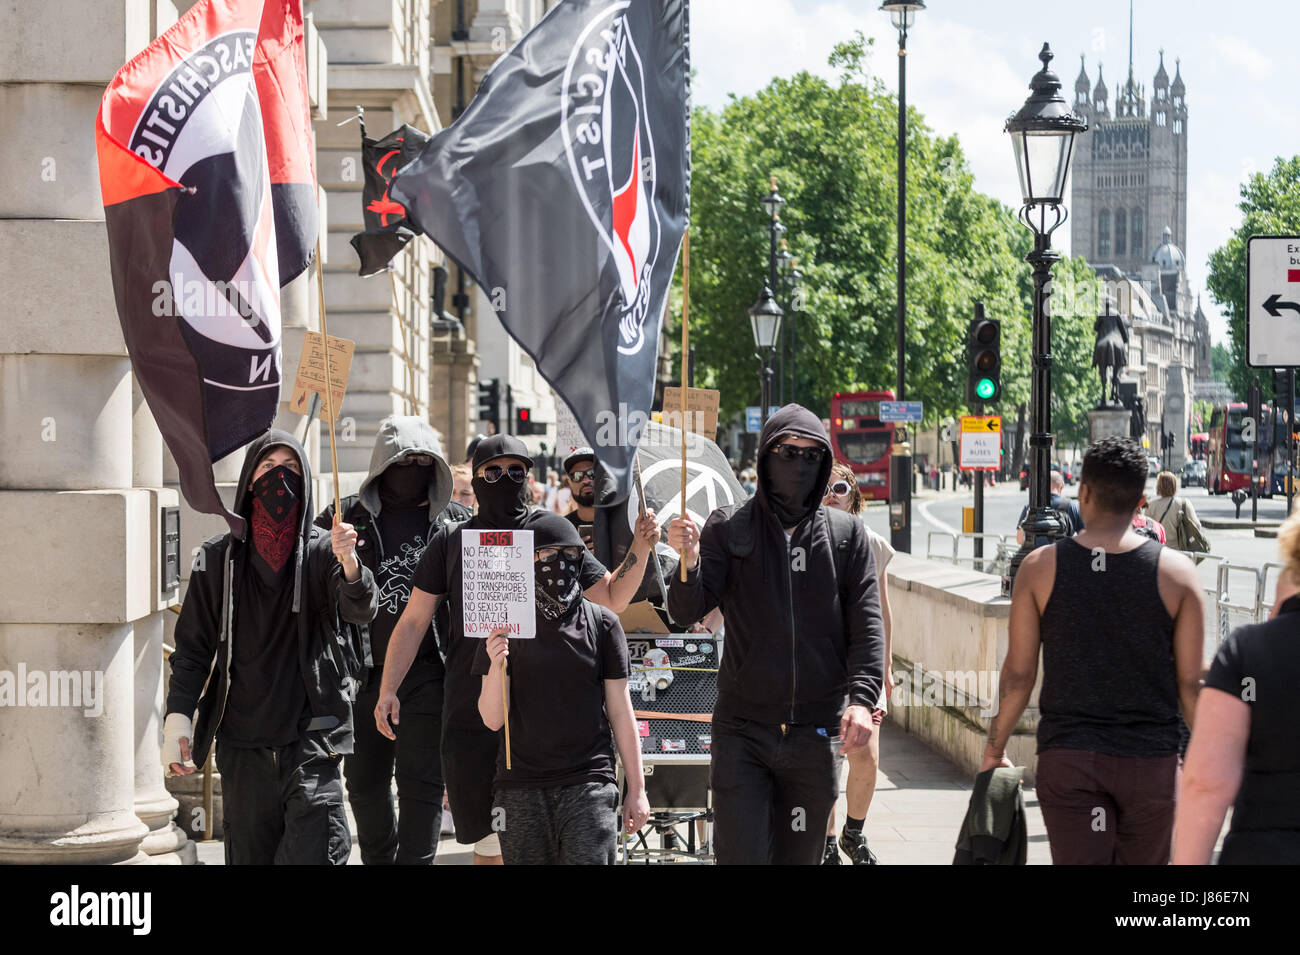 Londres, Royaume-Uni. 27 mai, 2017. Un petit groupe d'antifascistes et anarchistes mars à Whitehall dans le cadre d'une protestation anti-parti conservateur avant la prochaine élection générale. © Guy Josse/Alamy Live News Banque D'Images